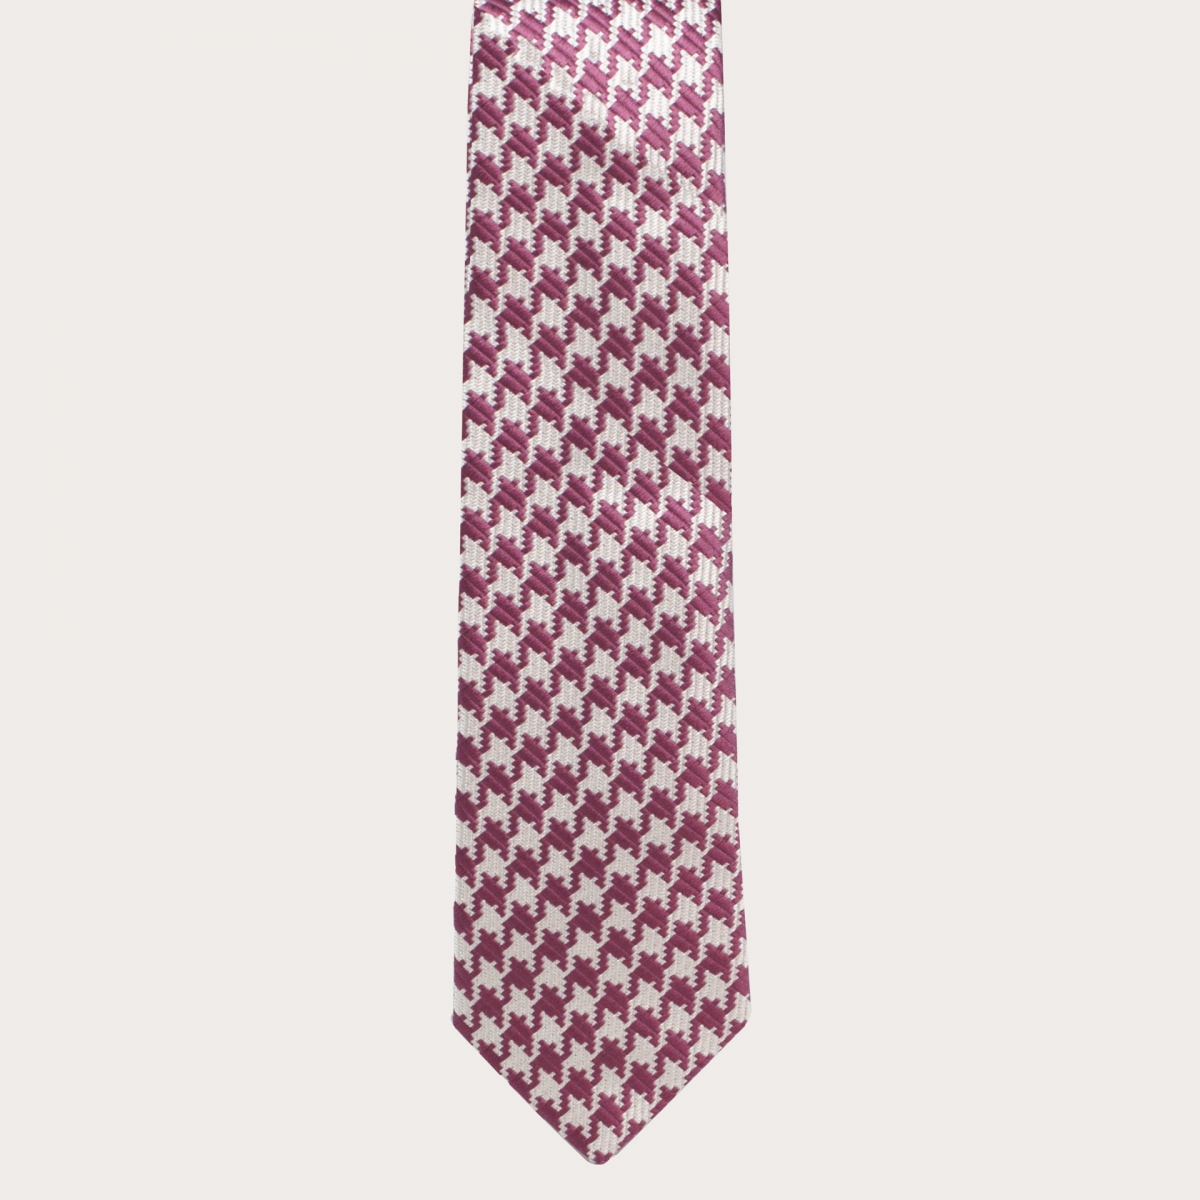 Brucle cravate en soie pied de poule rose